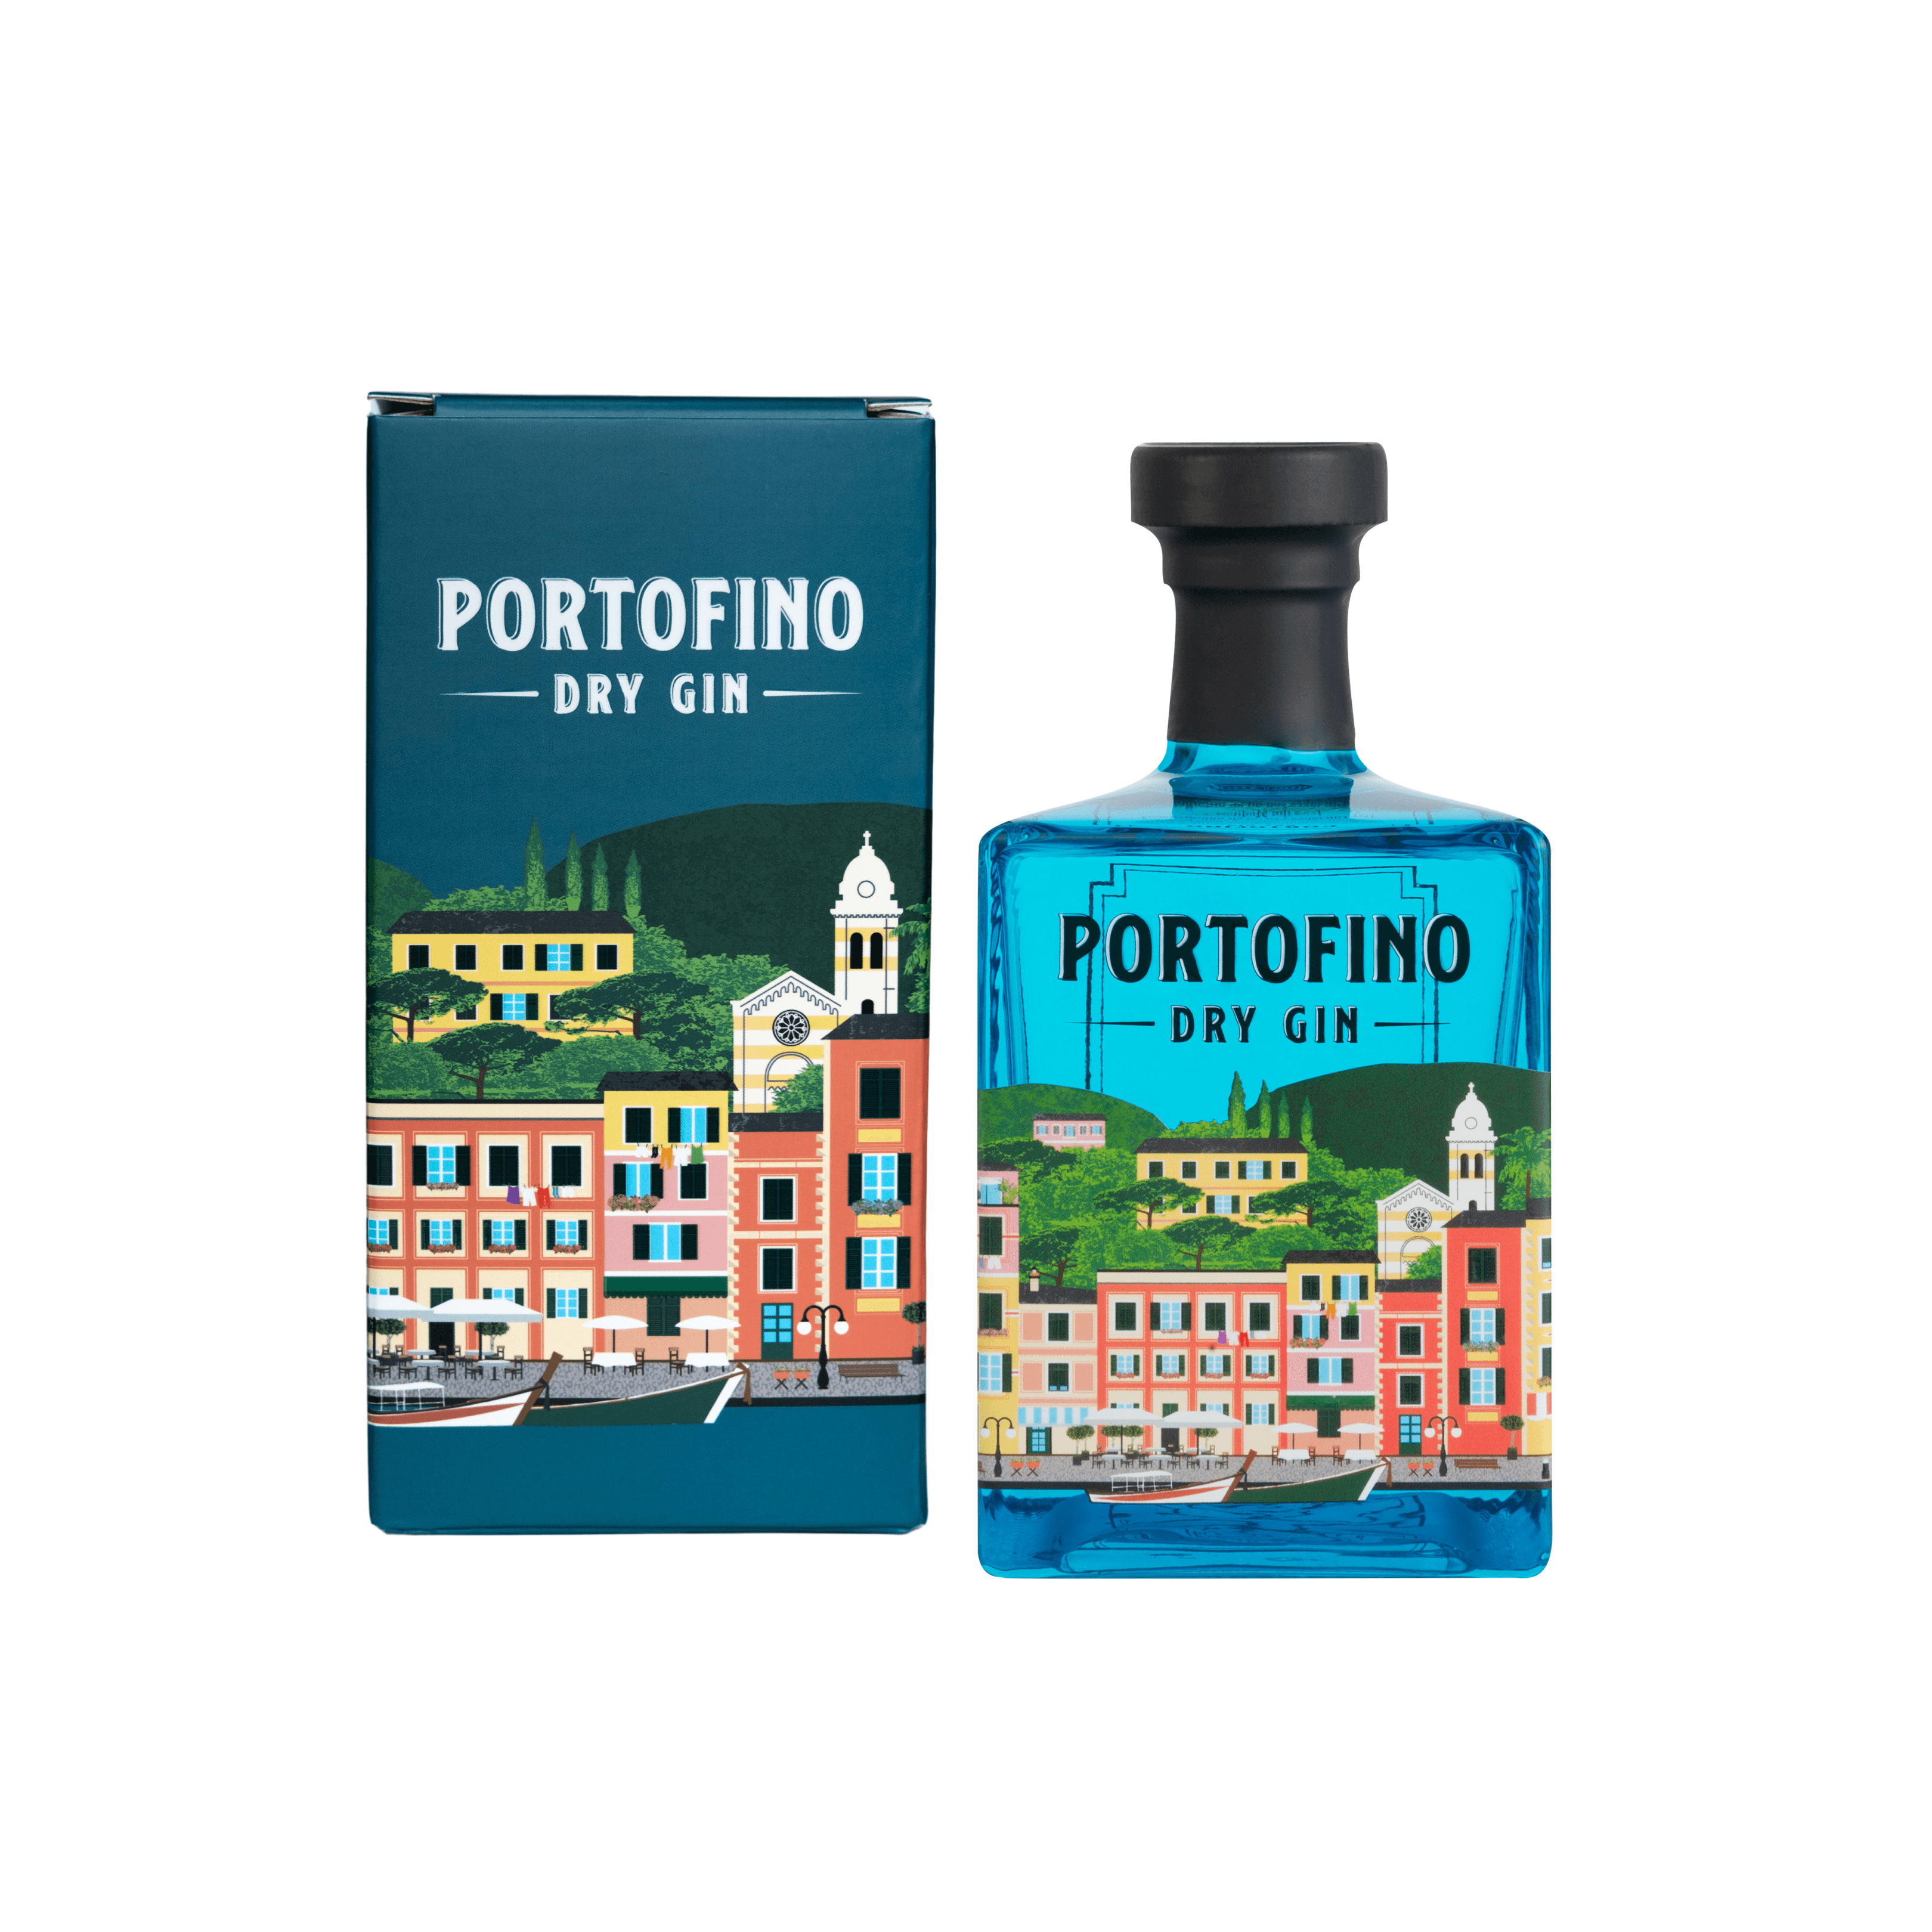 WINTER BOSTON - Portofino Dry Gin